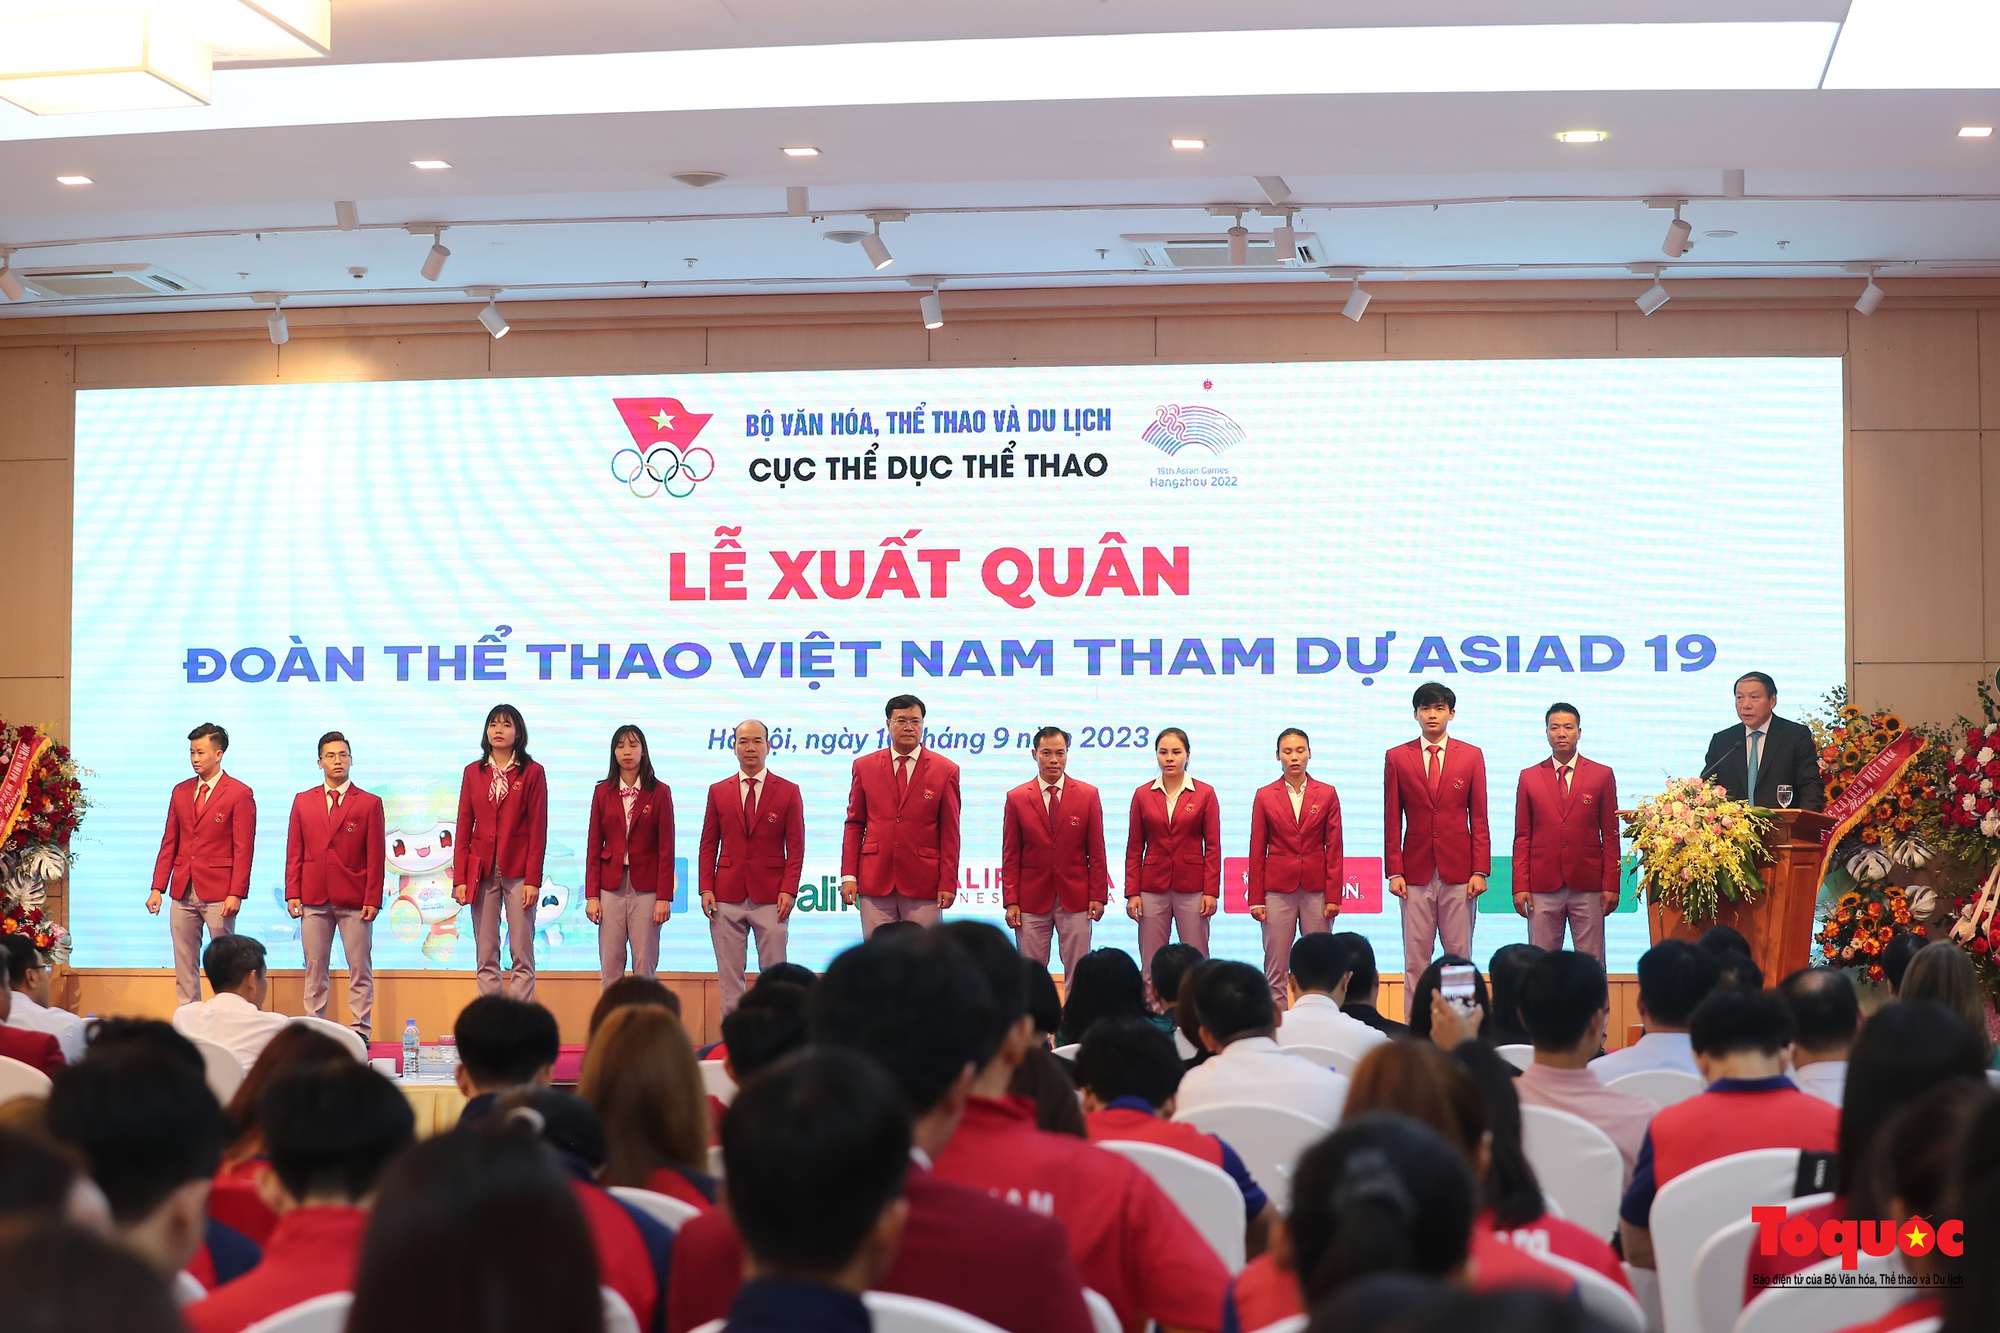 Đoàn Thể thao Việt Nam tham dự ASIAD 19 ủng hộ hơn một trăm triệu đồng tới các nạn nhân vụ cháy chung cư mini và lũ quét tại Lào Cai - Ảnh 13.